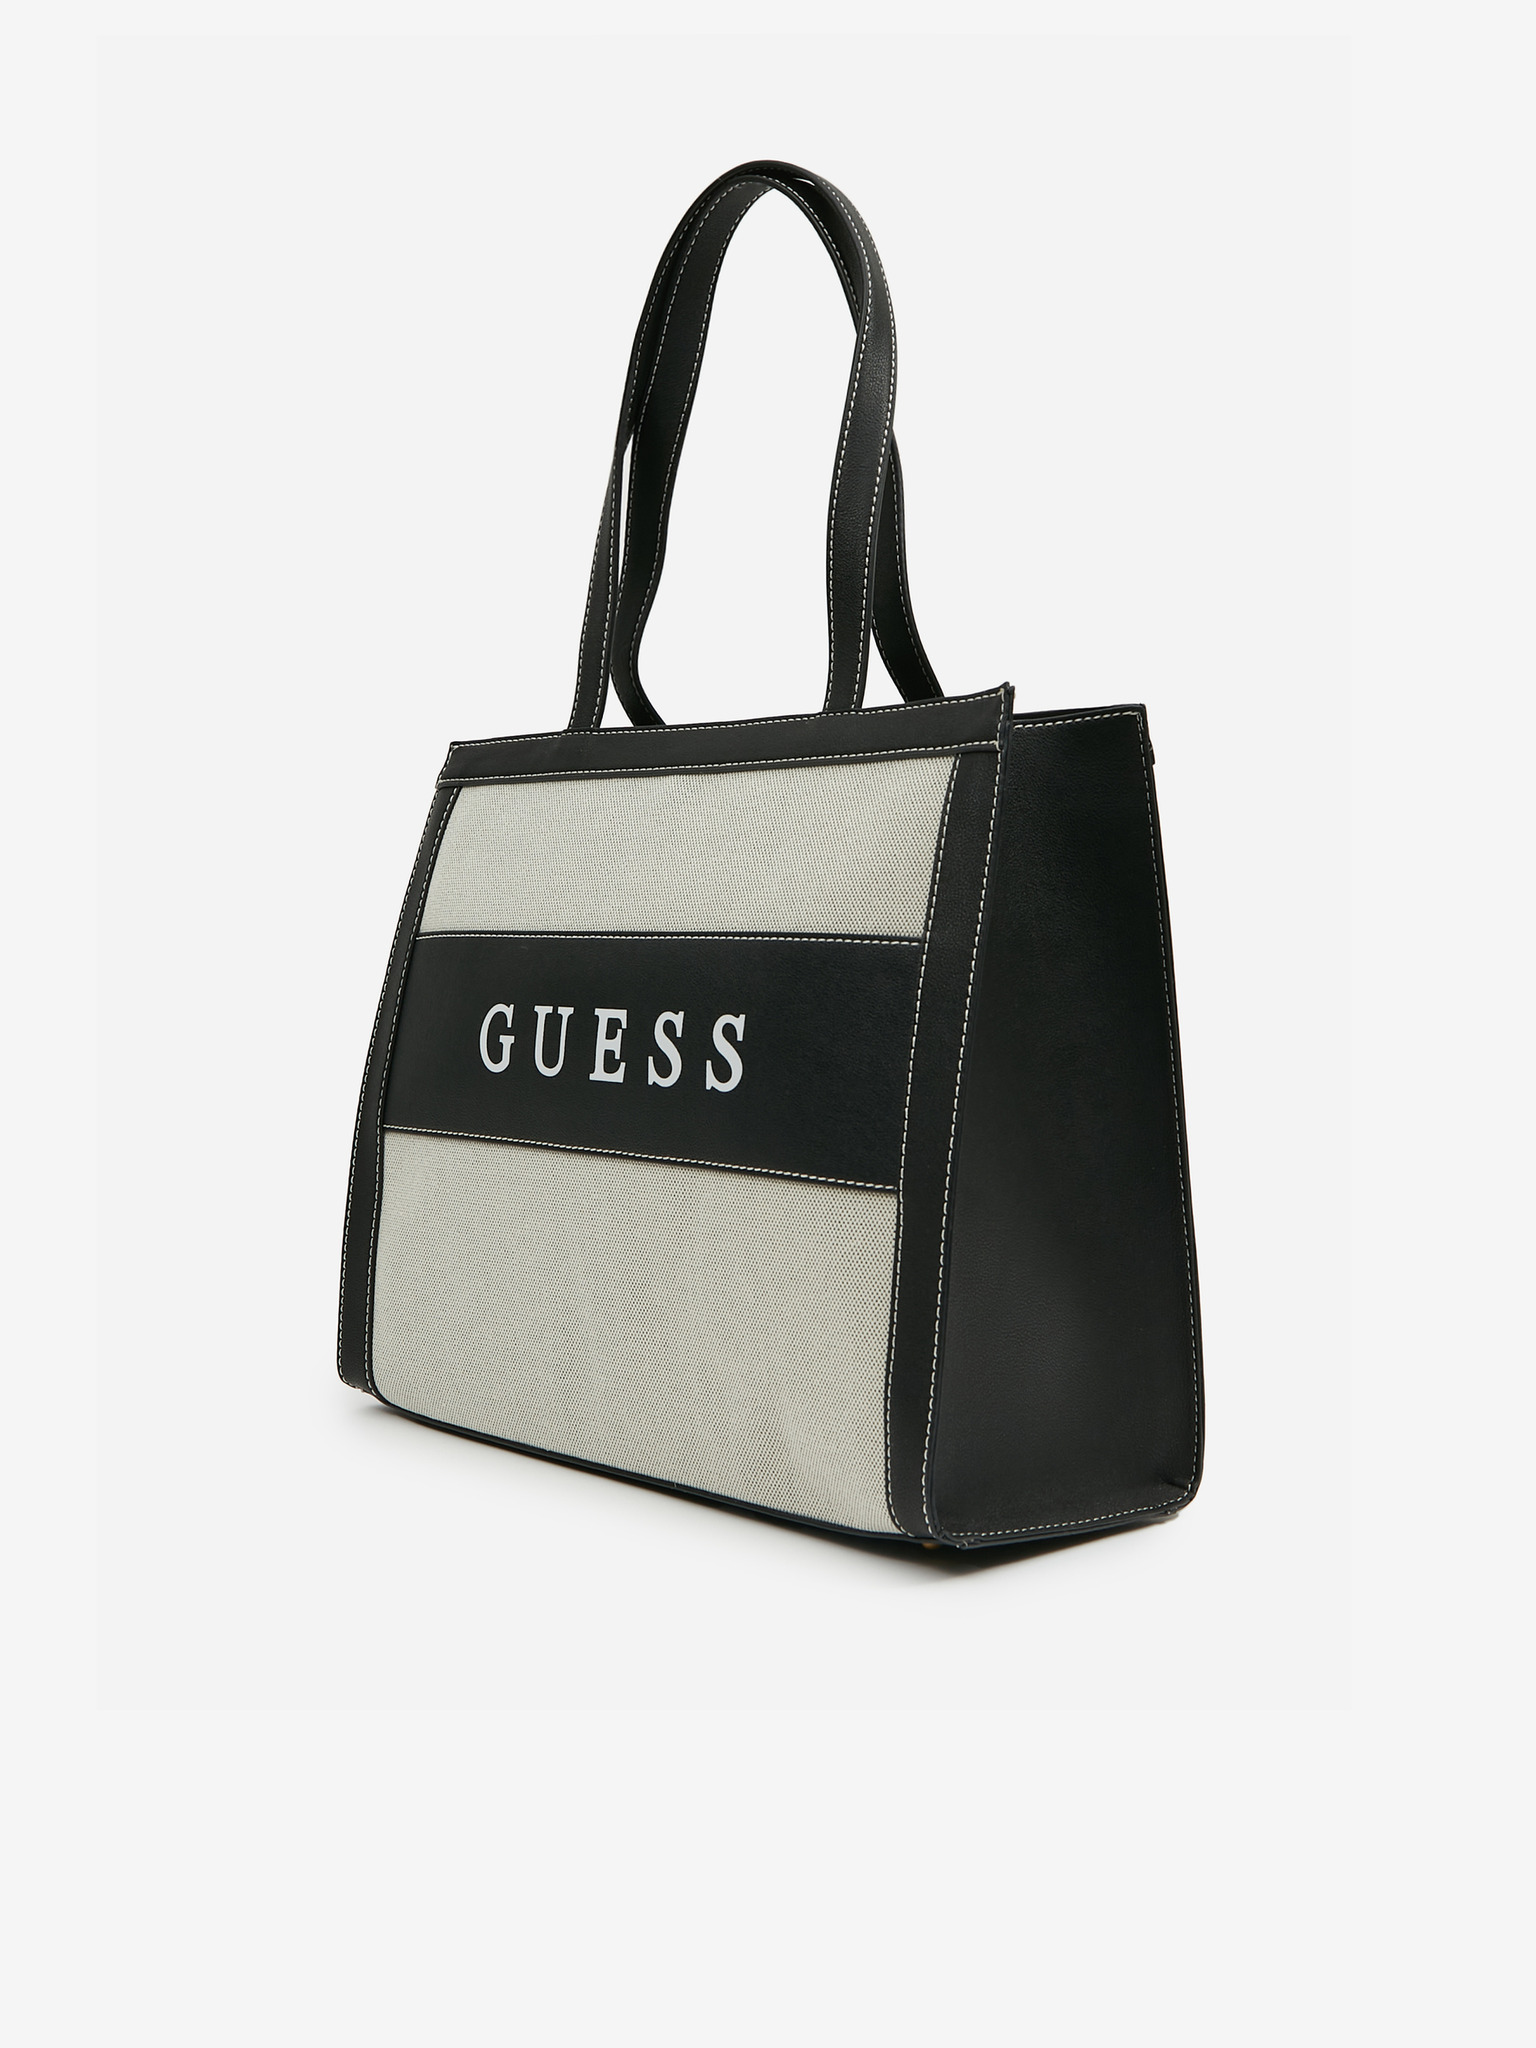 Guess - Monique Handbag